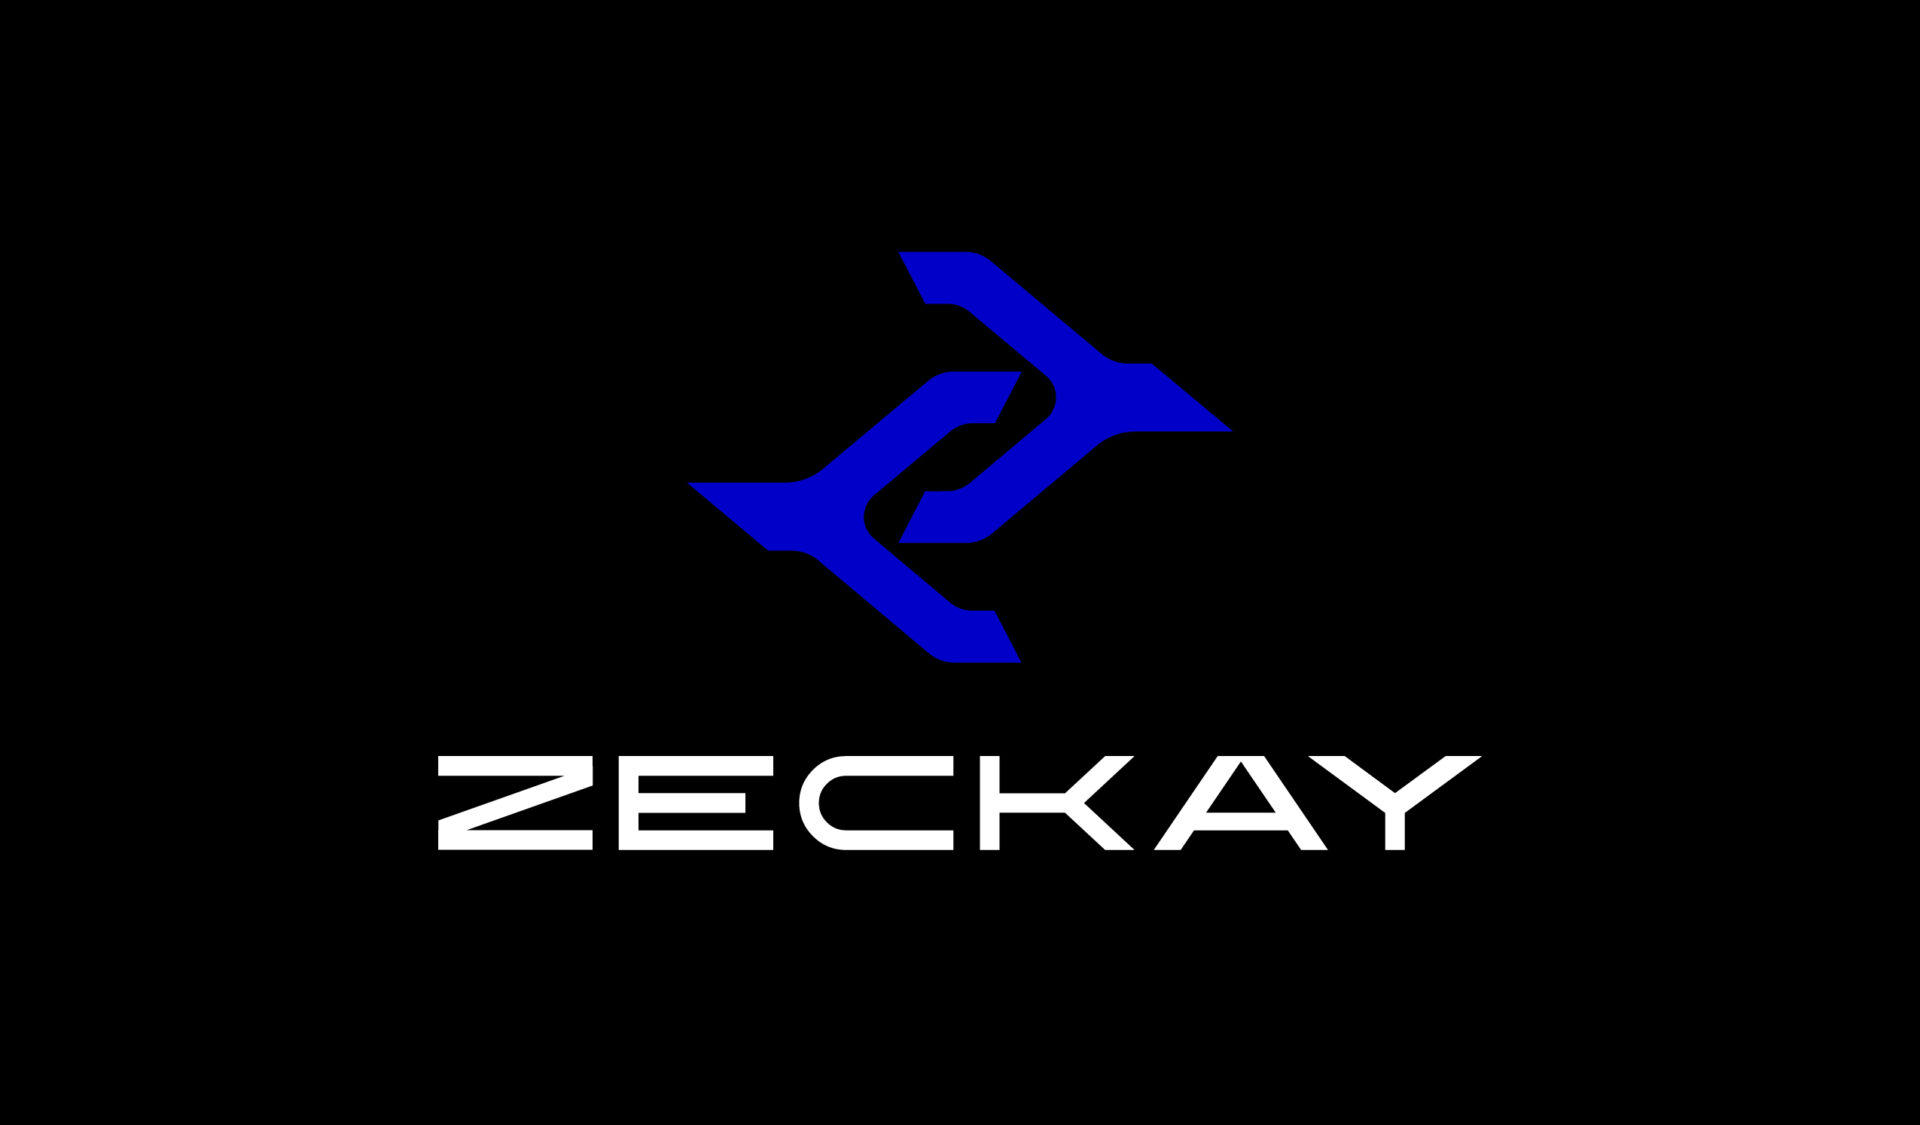 zeckay_1